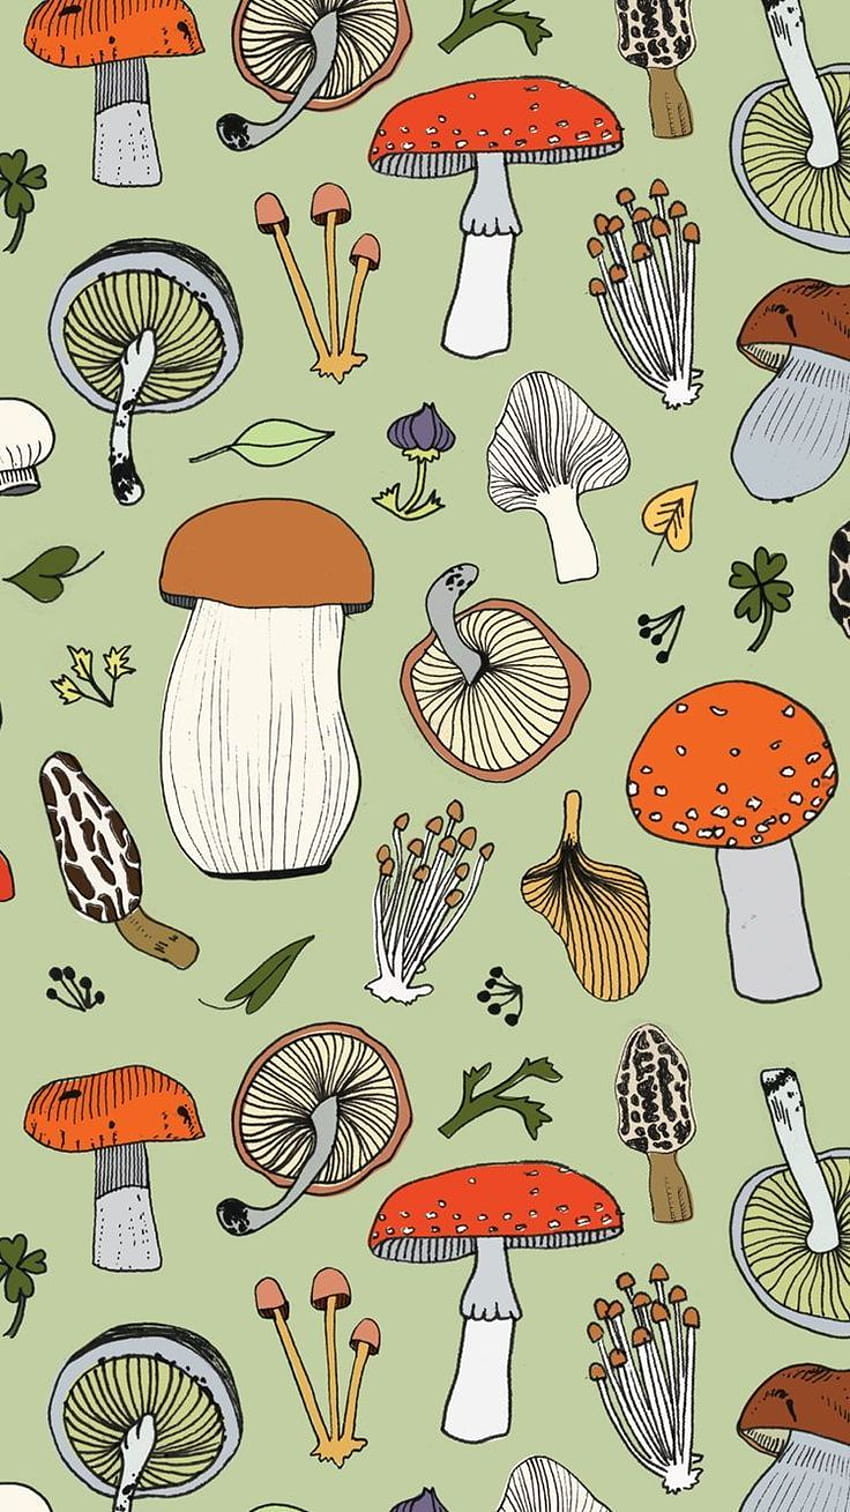 A pattern of mushrooms and leaves - Mushroom